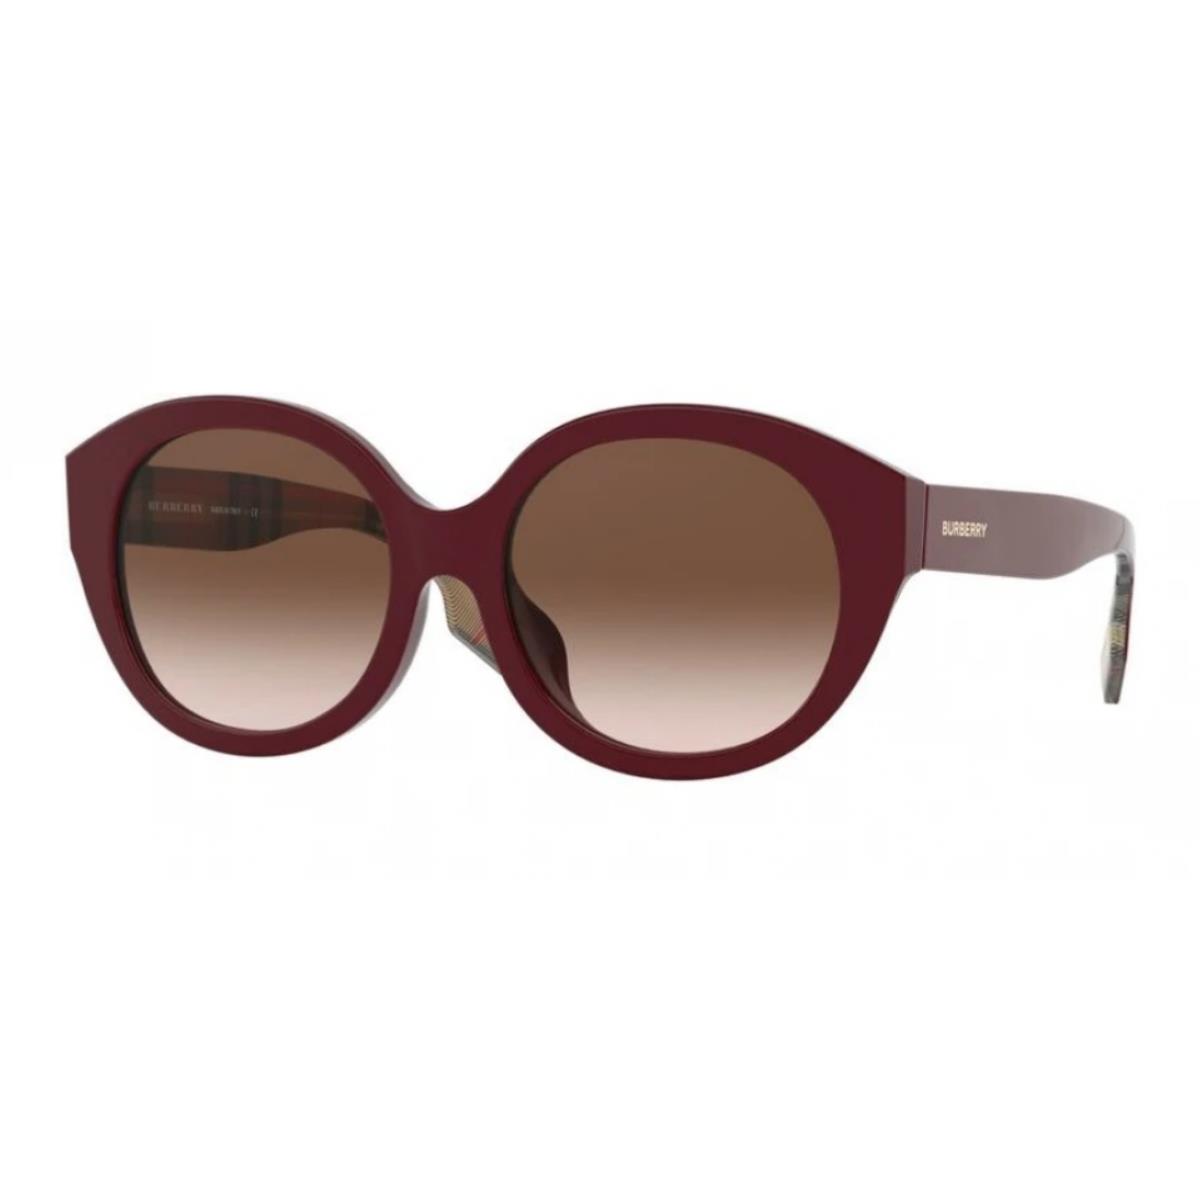 Burberry Womens 55mm Burgundy Round Sunglasses S2922